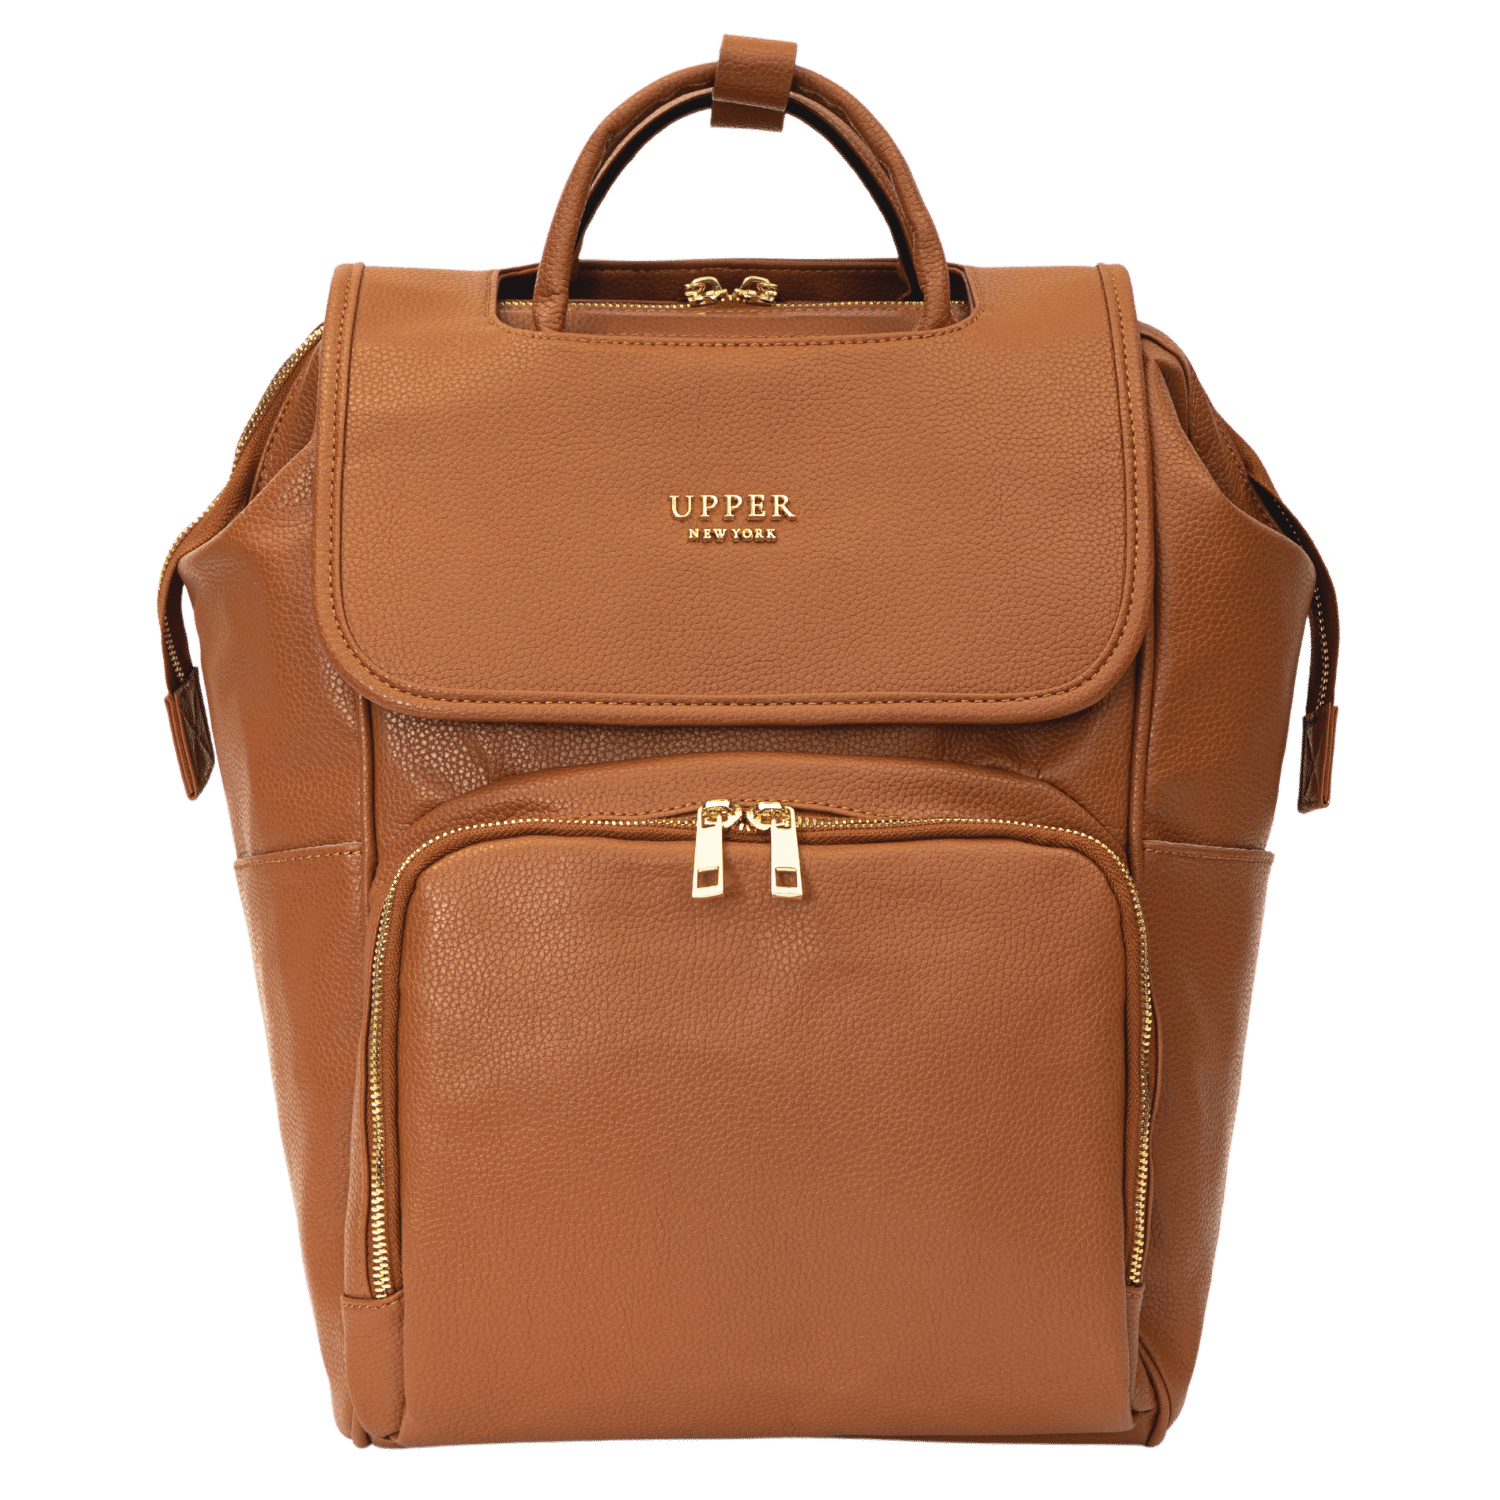 UPPER 549 - Luggage & Bags > Diaper Bags Caramel - rich royal brown La Madison II - Elegant Classic Diaper Bag II